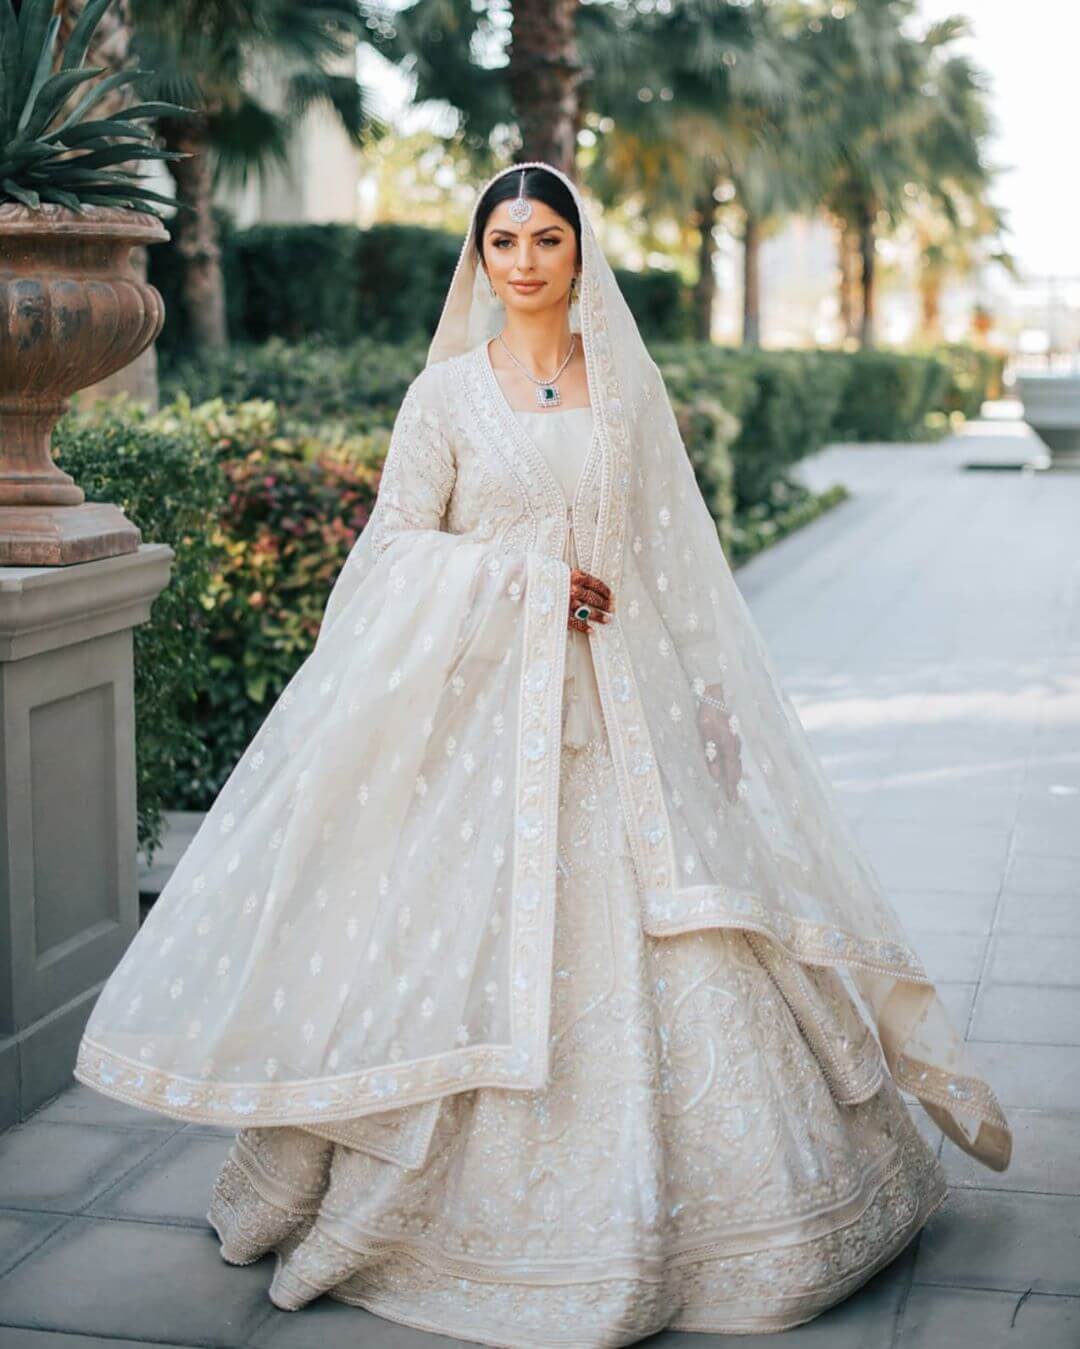 Buy Pakistani Bridal Lehenga Online In India - Etsy India